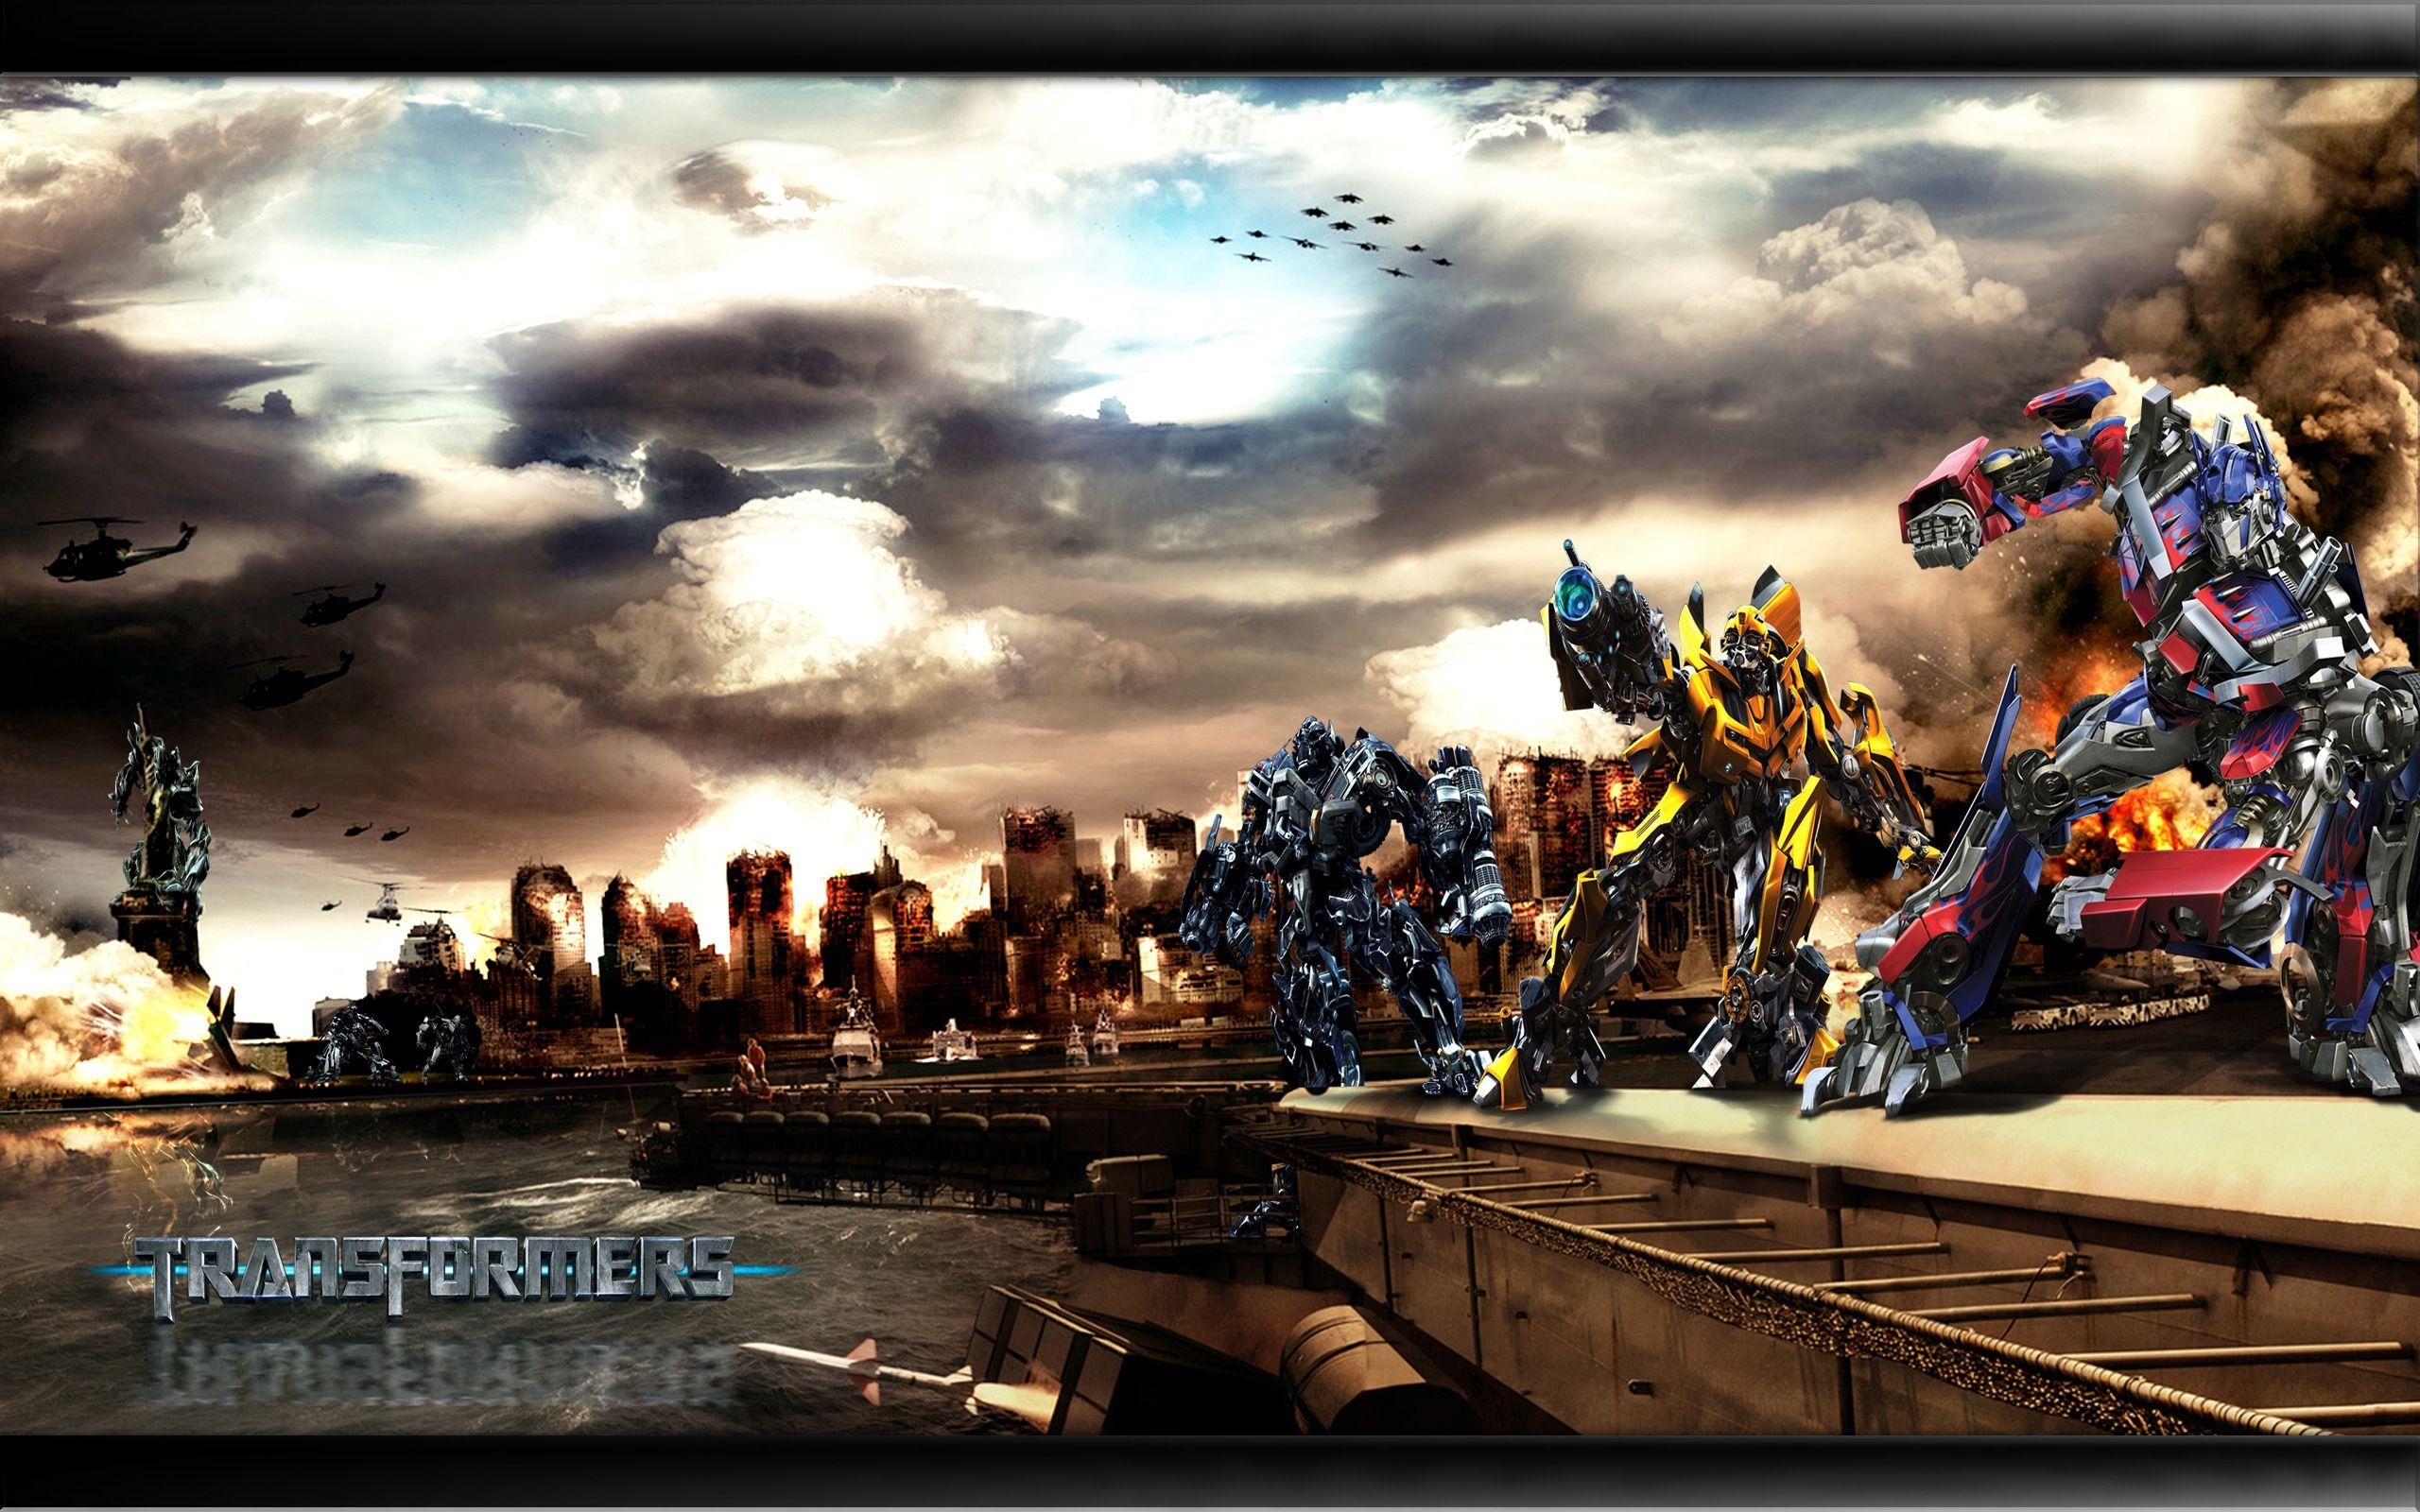 Transformers Autobot Vs Decepticons Wallpaper Transformers 2 Movies Wallpaper in jpg format for free download